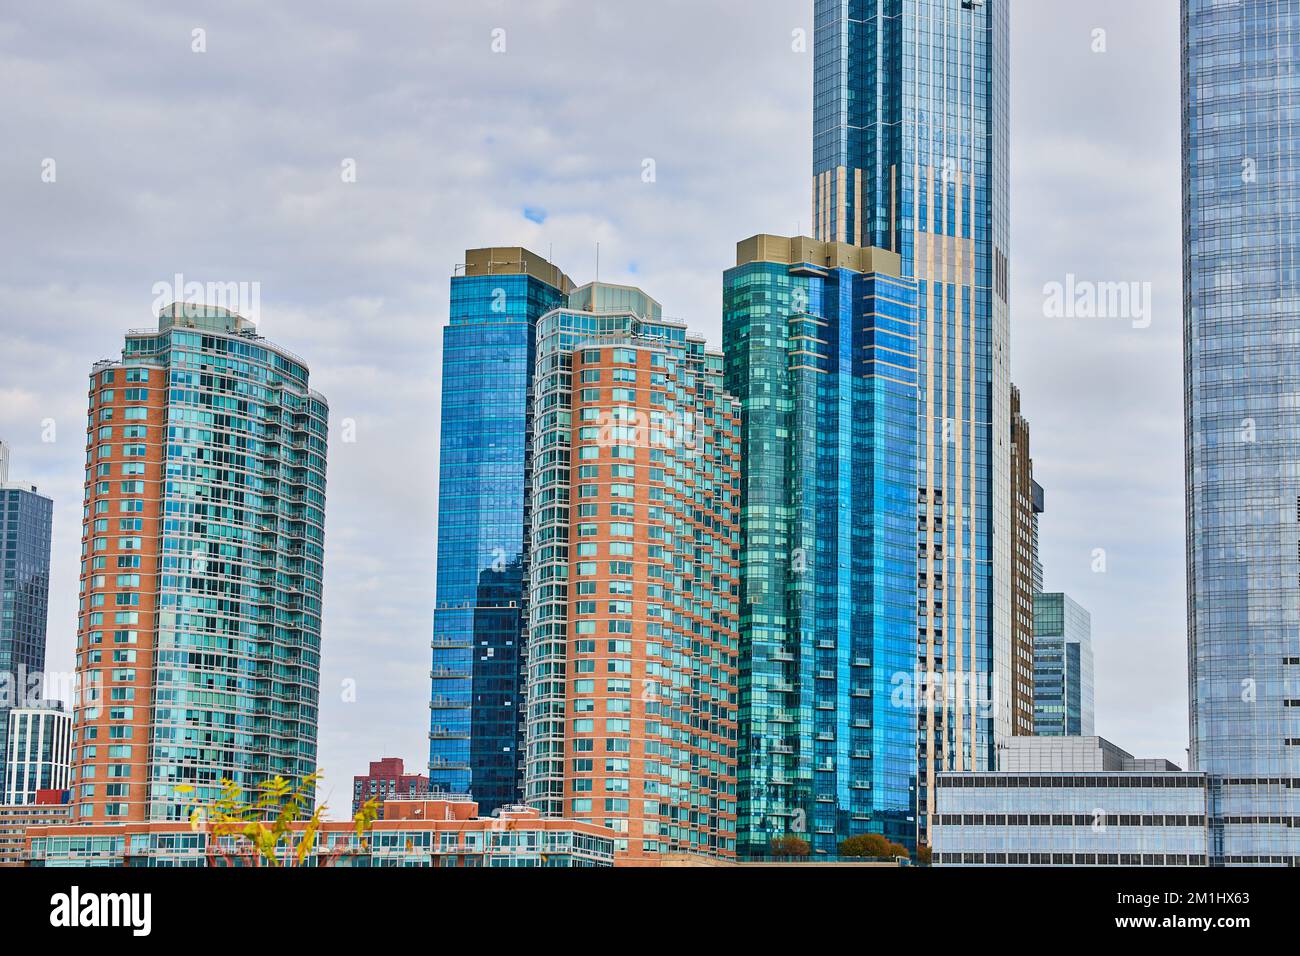 Details der Wolkenkratzer von New Jersey mit leuchtend blauen und grünen Glasgebäuden Stockfoto